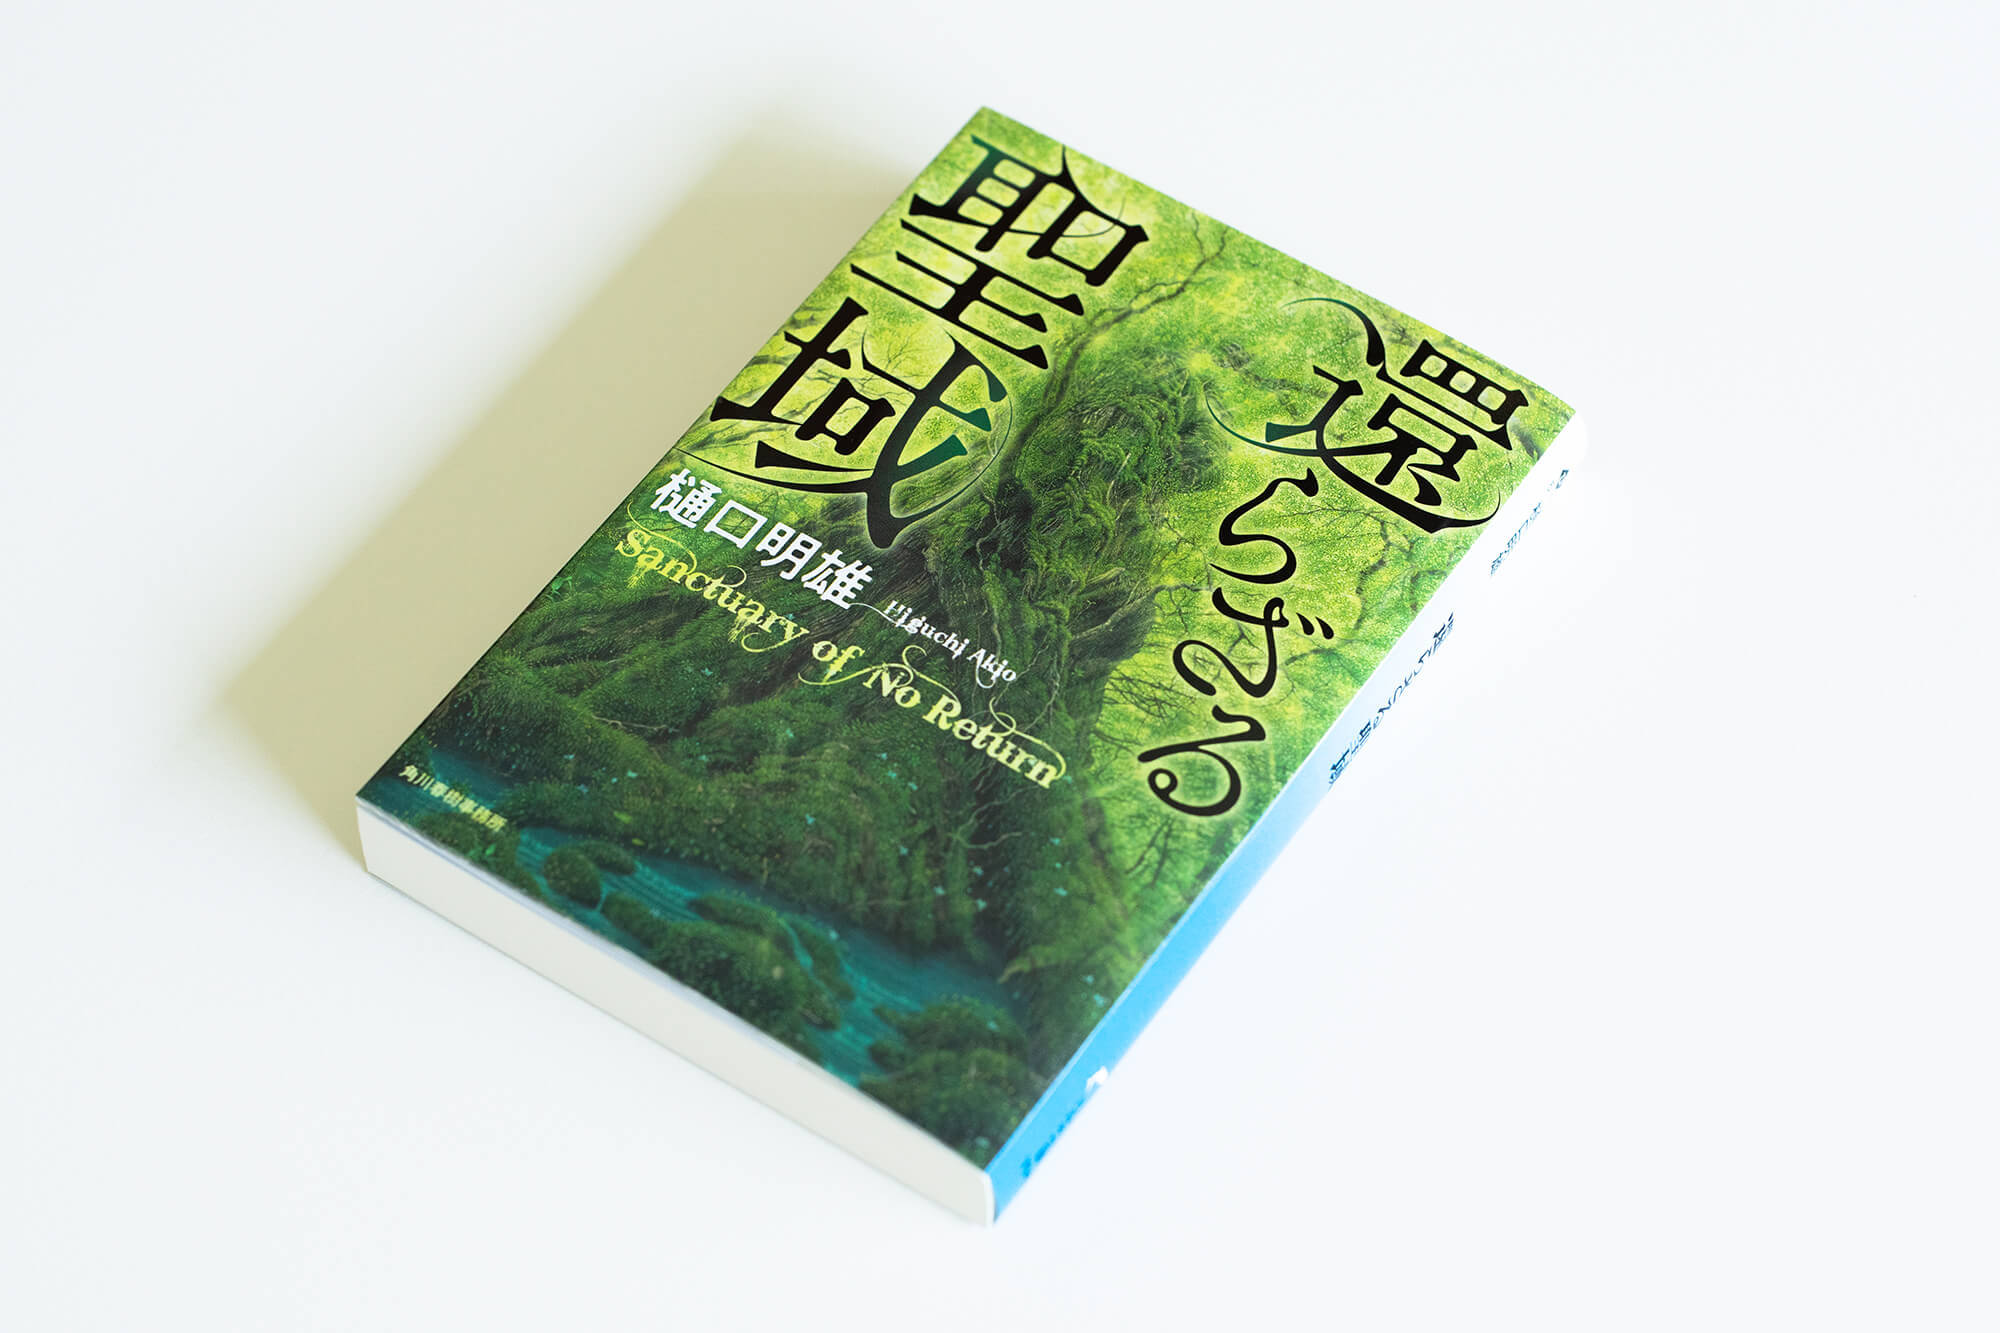 単行本に引き続き、屋久島を舞台にした冒険小説“還らざる聖域”の文庫版の装画を担当させていただきました。_b0240382_21325568.jpg